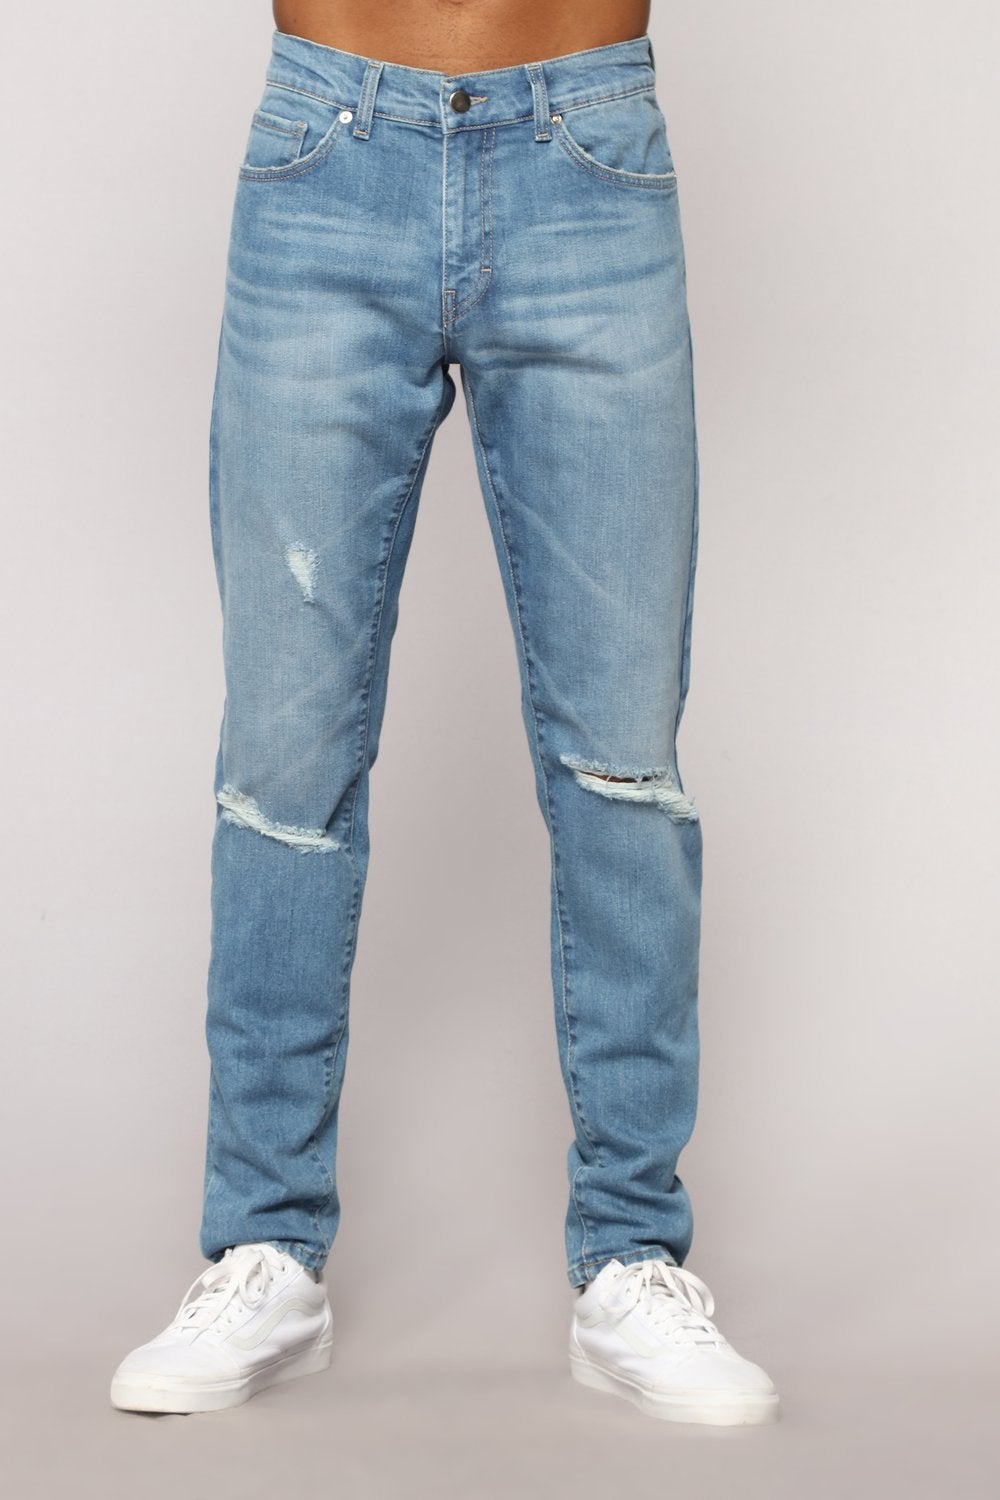 mens fashion nova jeans